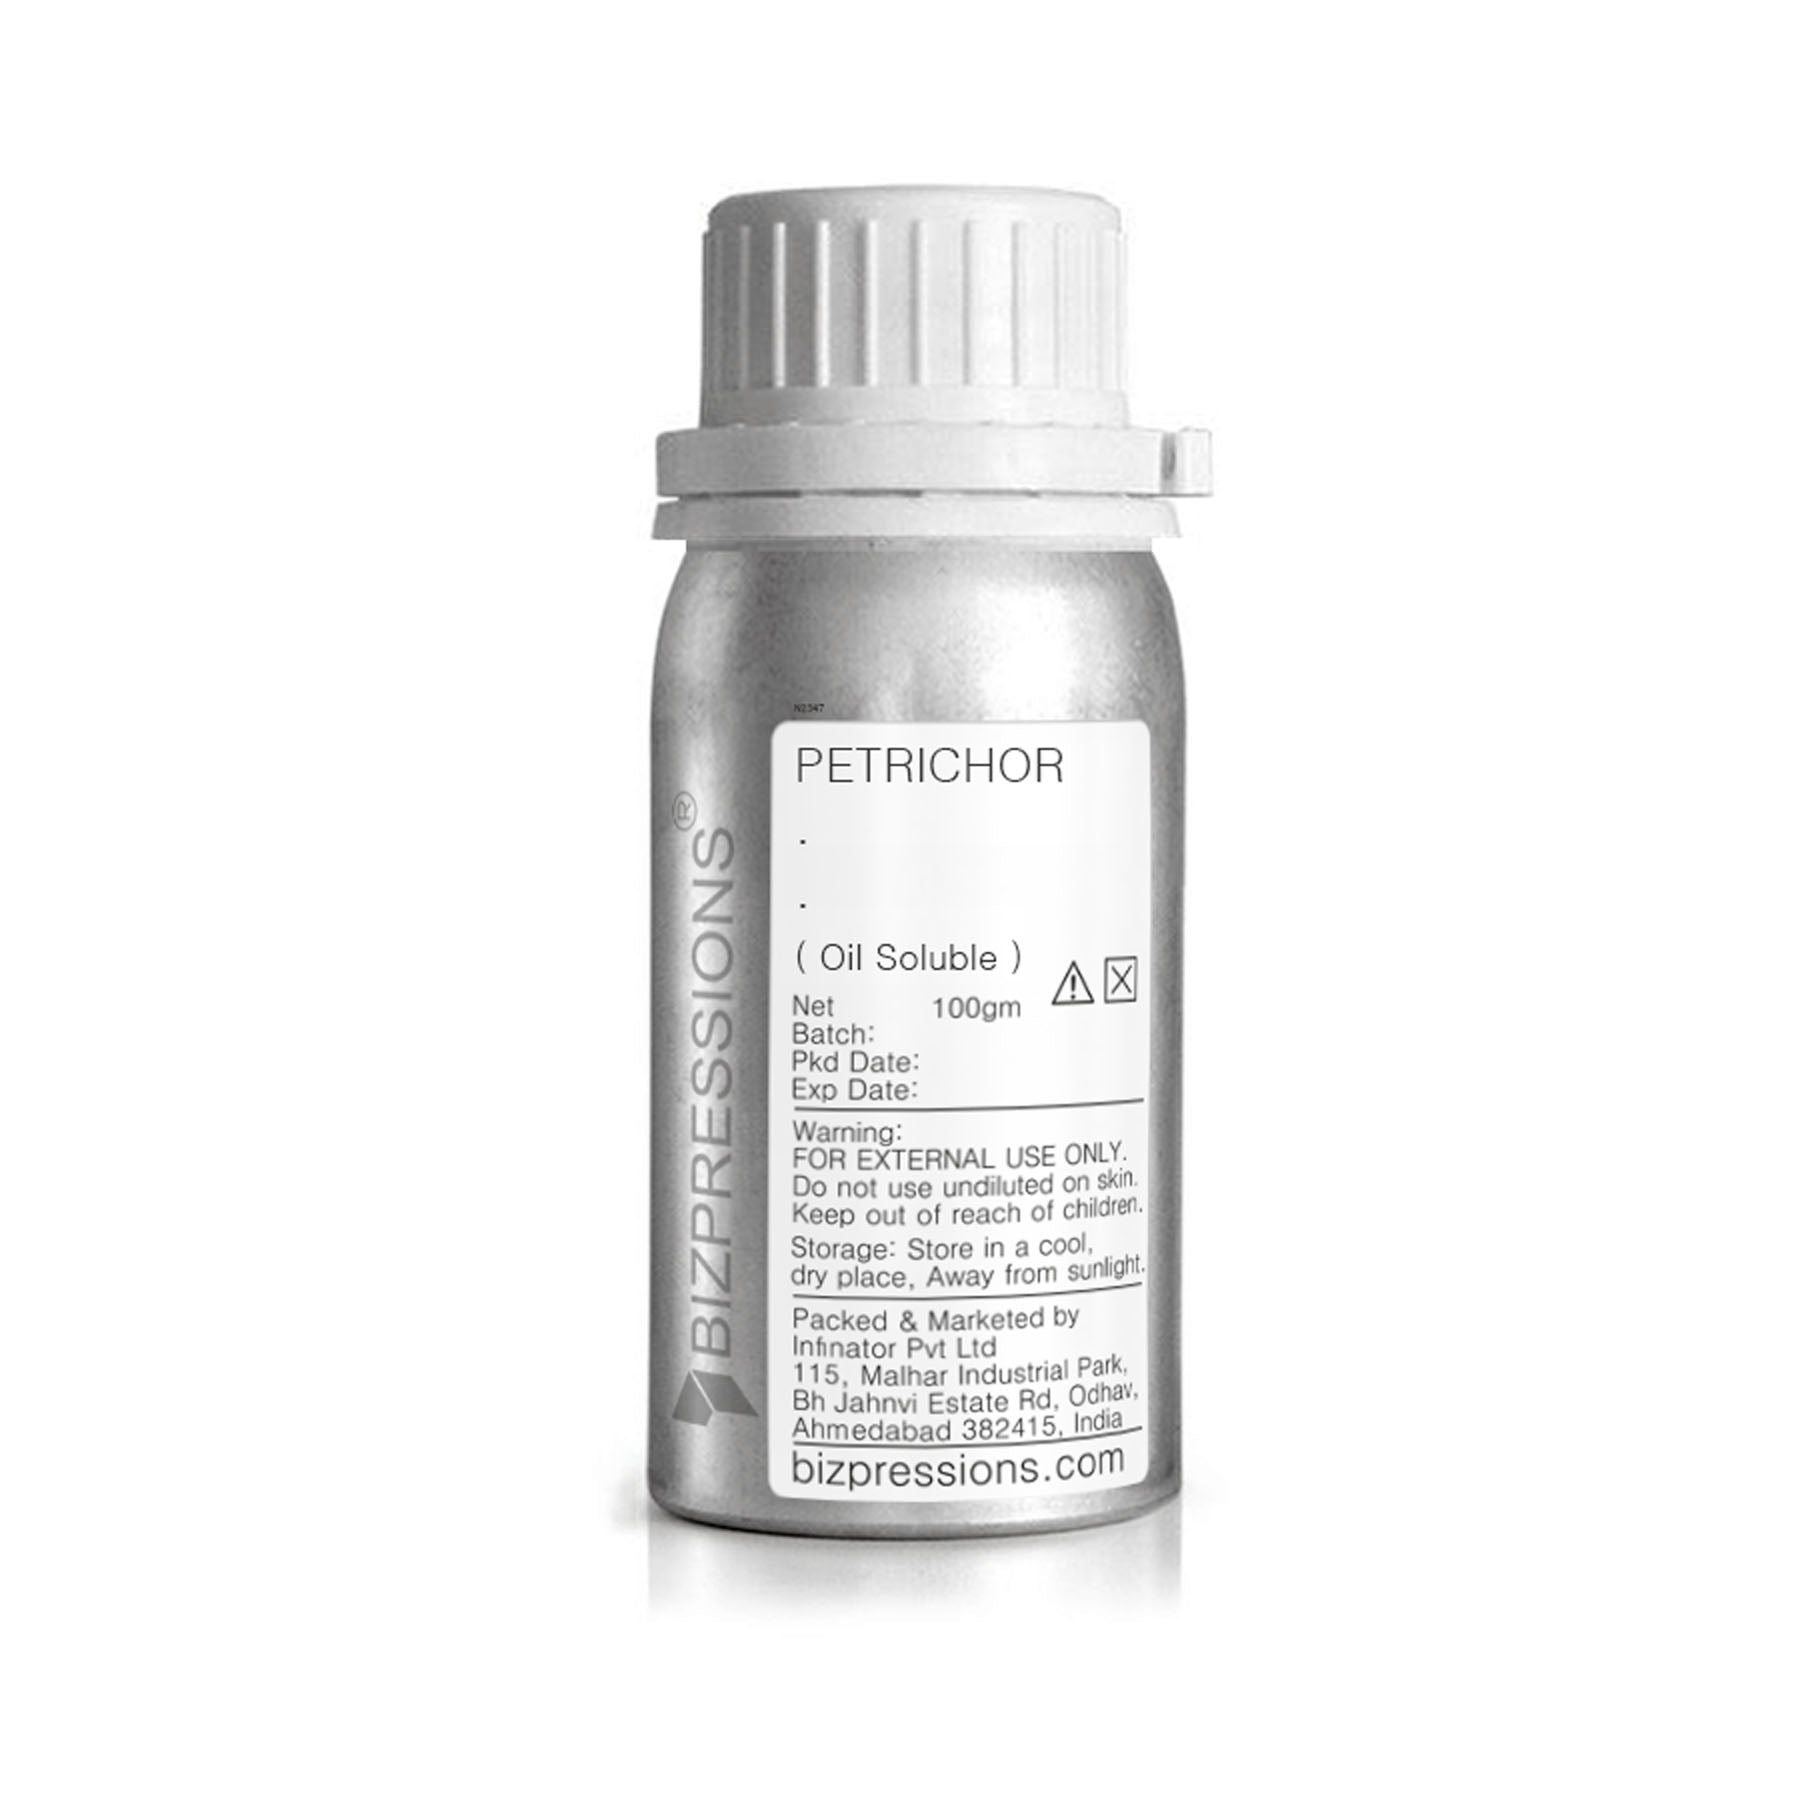 PETRICHOR - Fragrance ( Oil Soluble ) - 100 gm